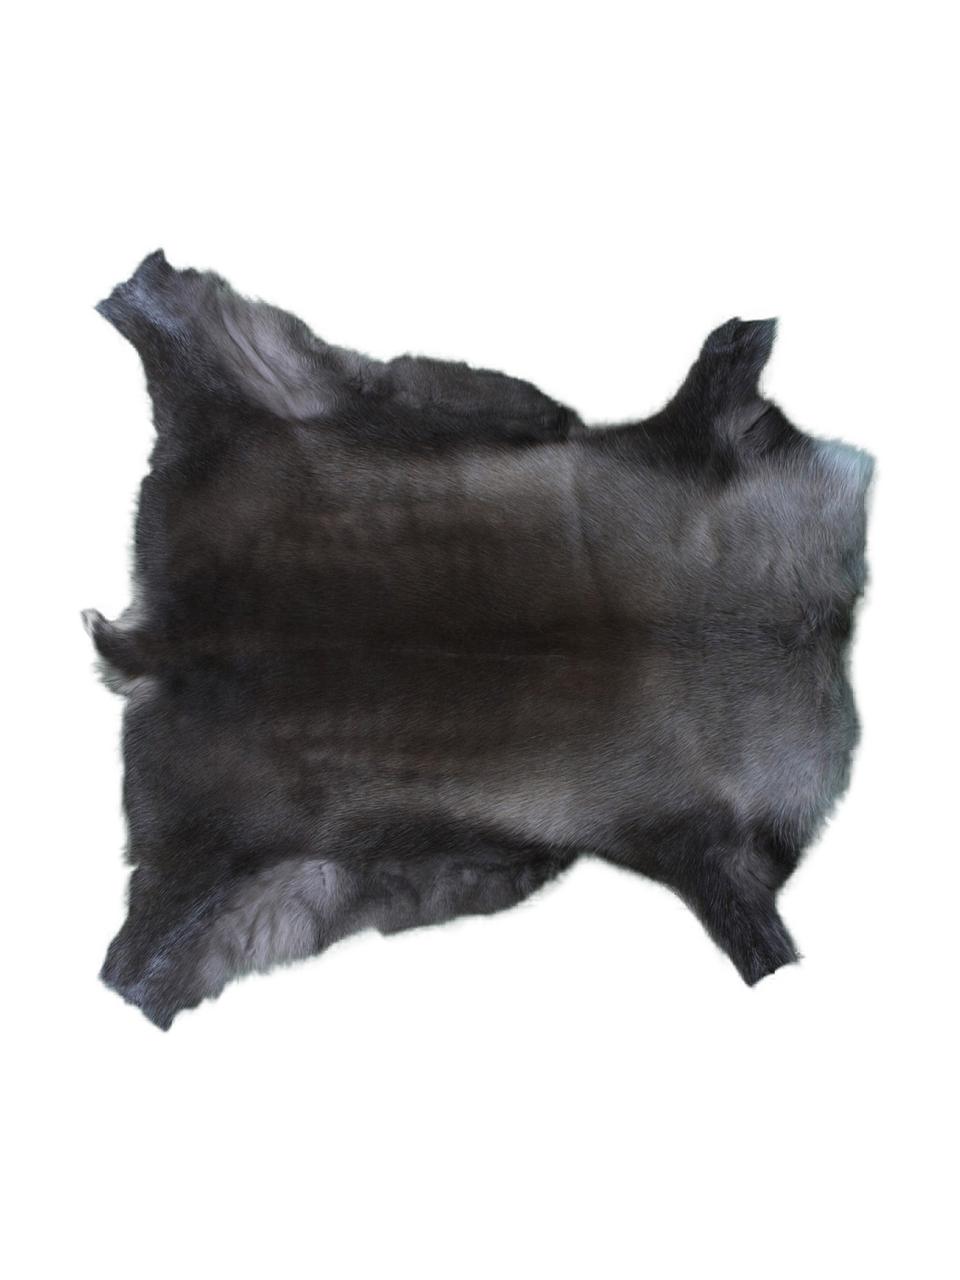 Dywan ze skóry renifera Berndo, Skóra renifera, Odcienie brązowego, Unikatowa skóra z renifera 232, 75 x 115 cm